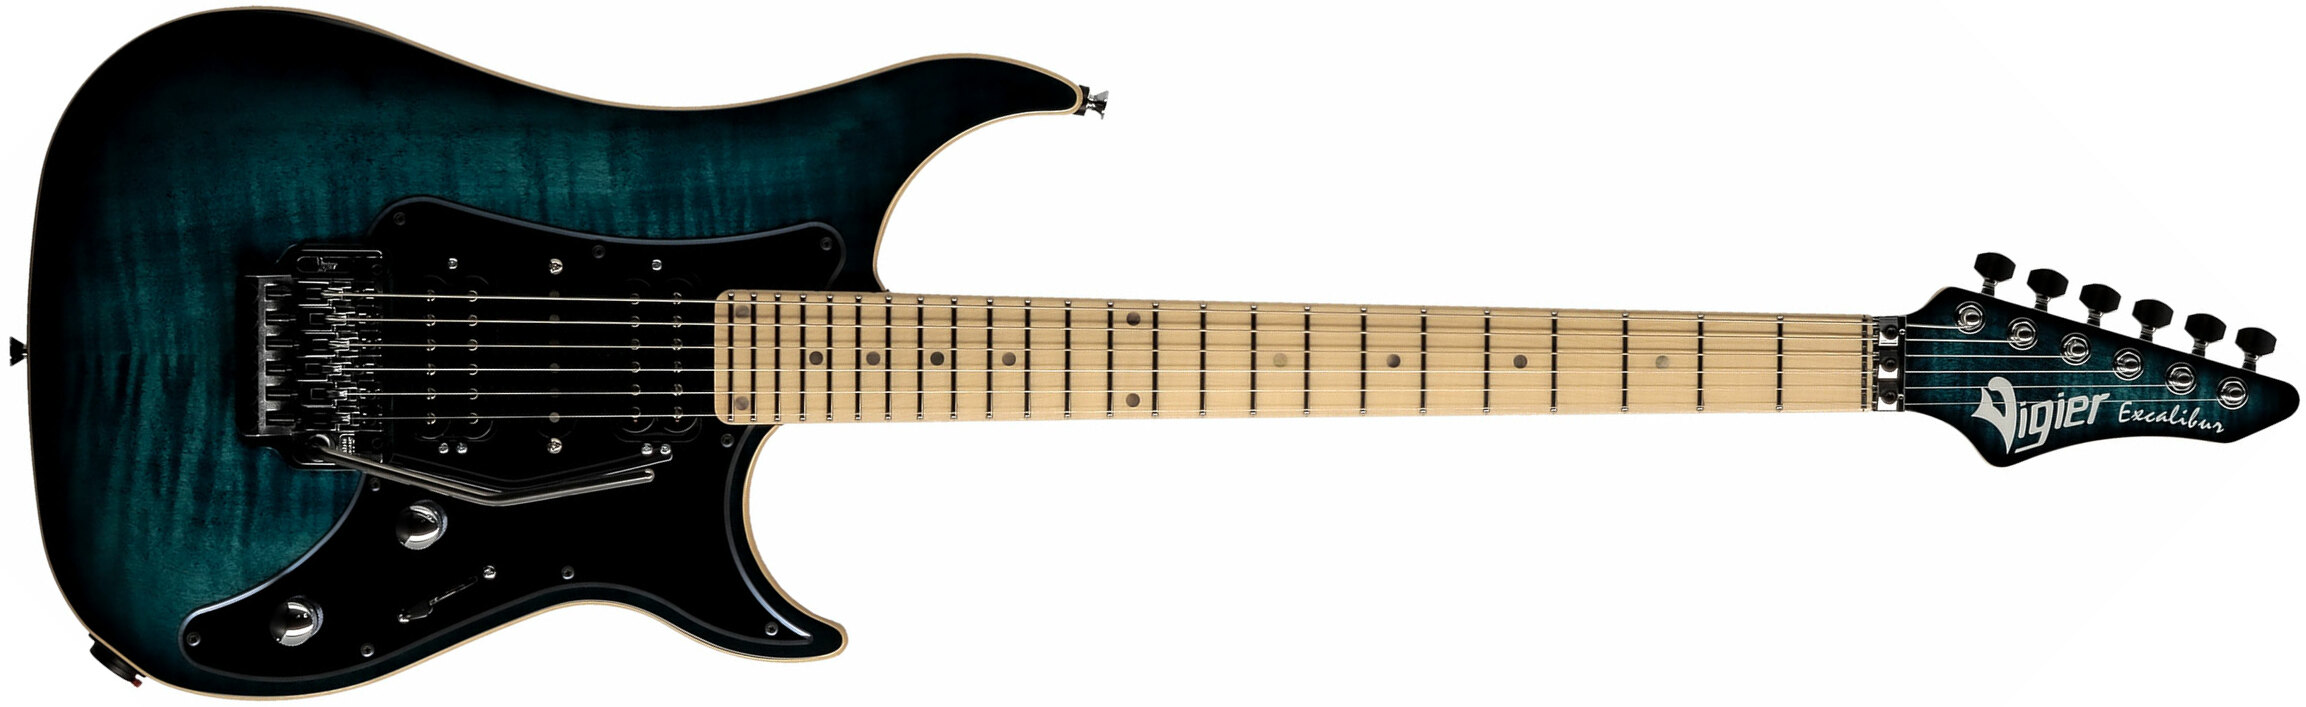 Vigier Excalibur Custom Hsh Fr Mn - Mysterious Blue - Guitarra eléctrica con forma de str. - Main picture